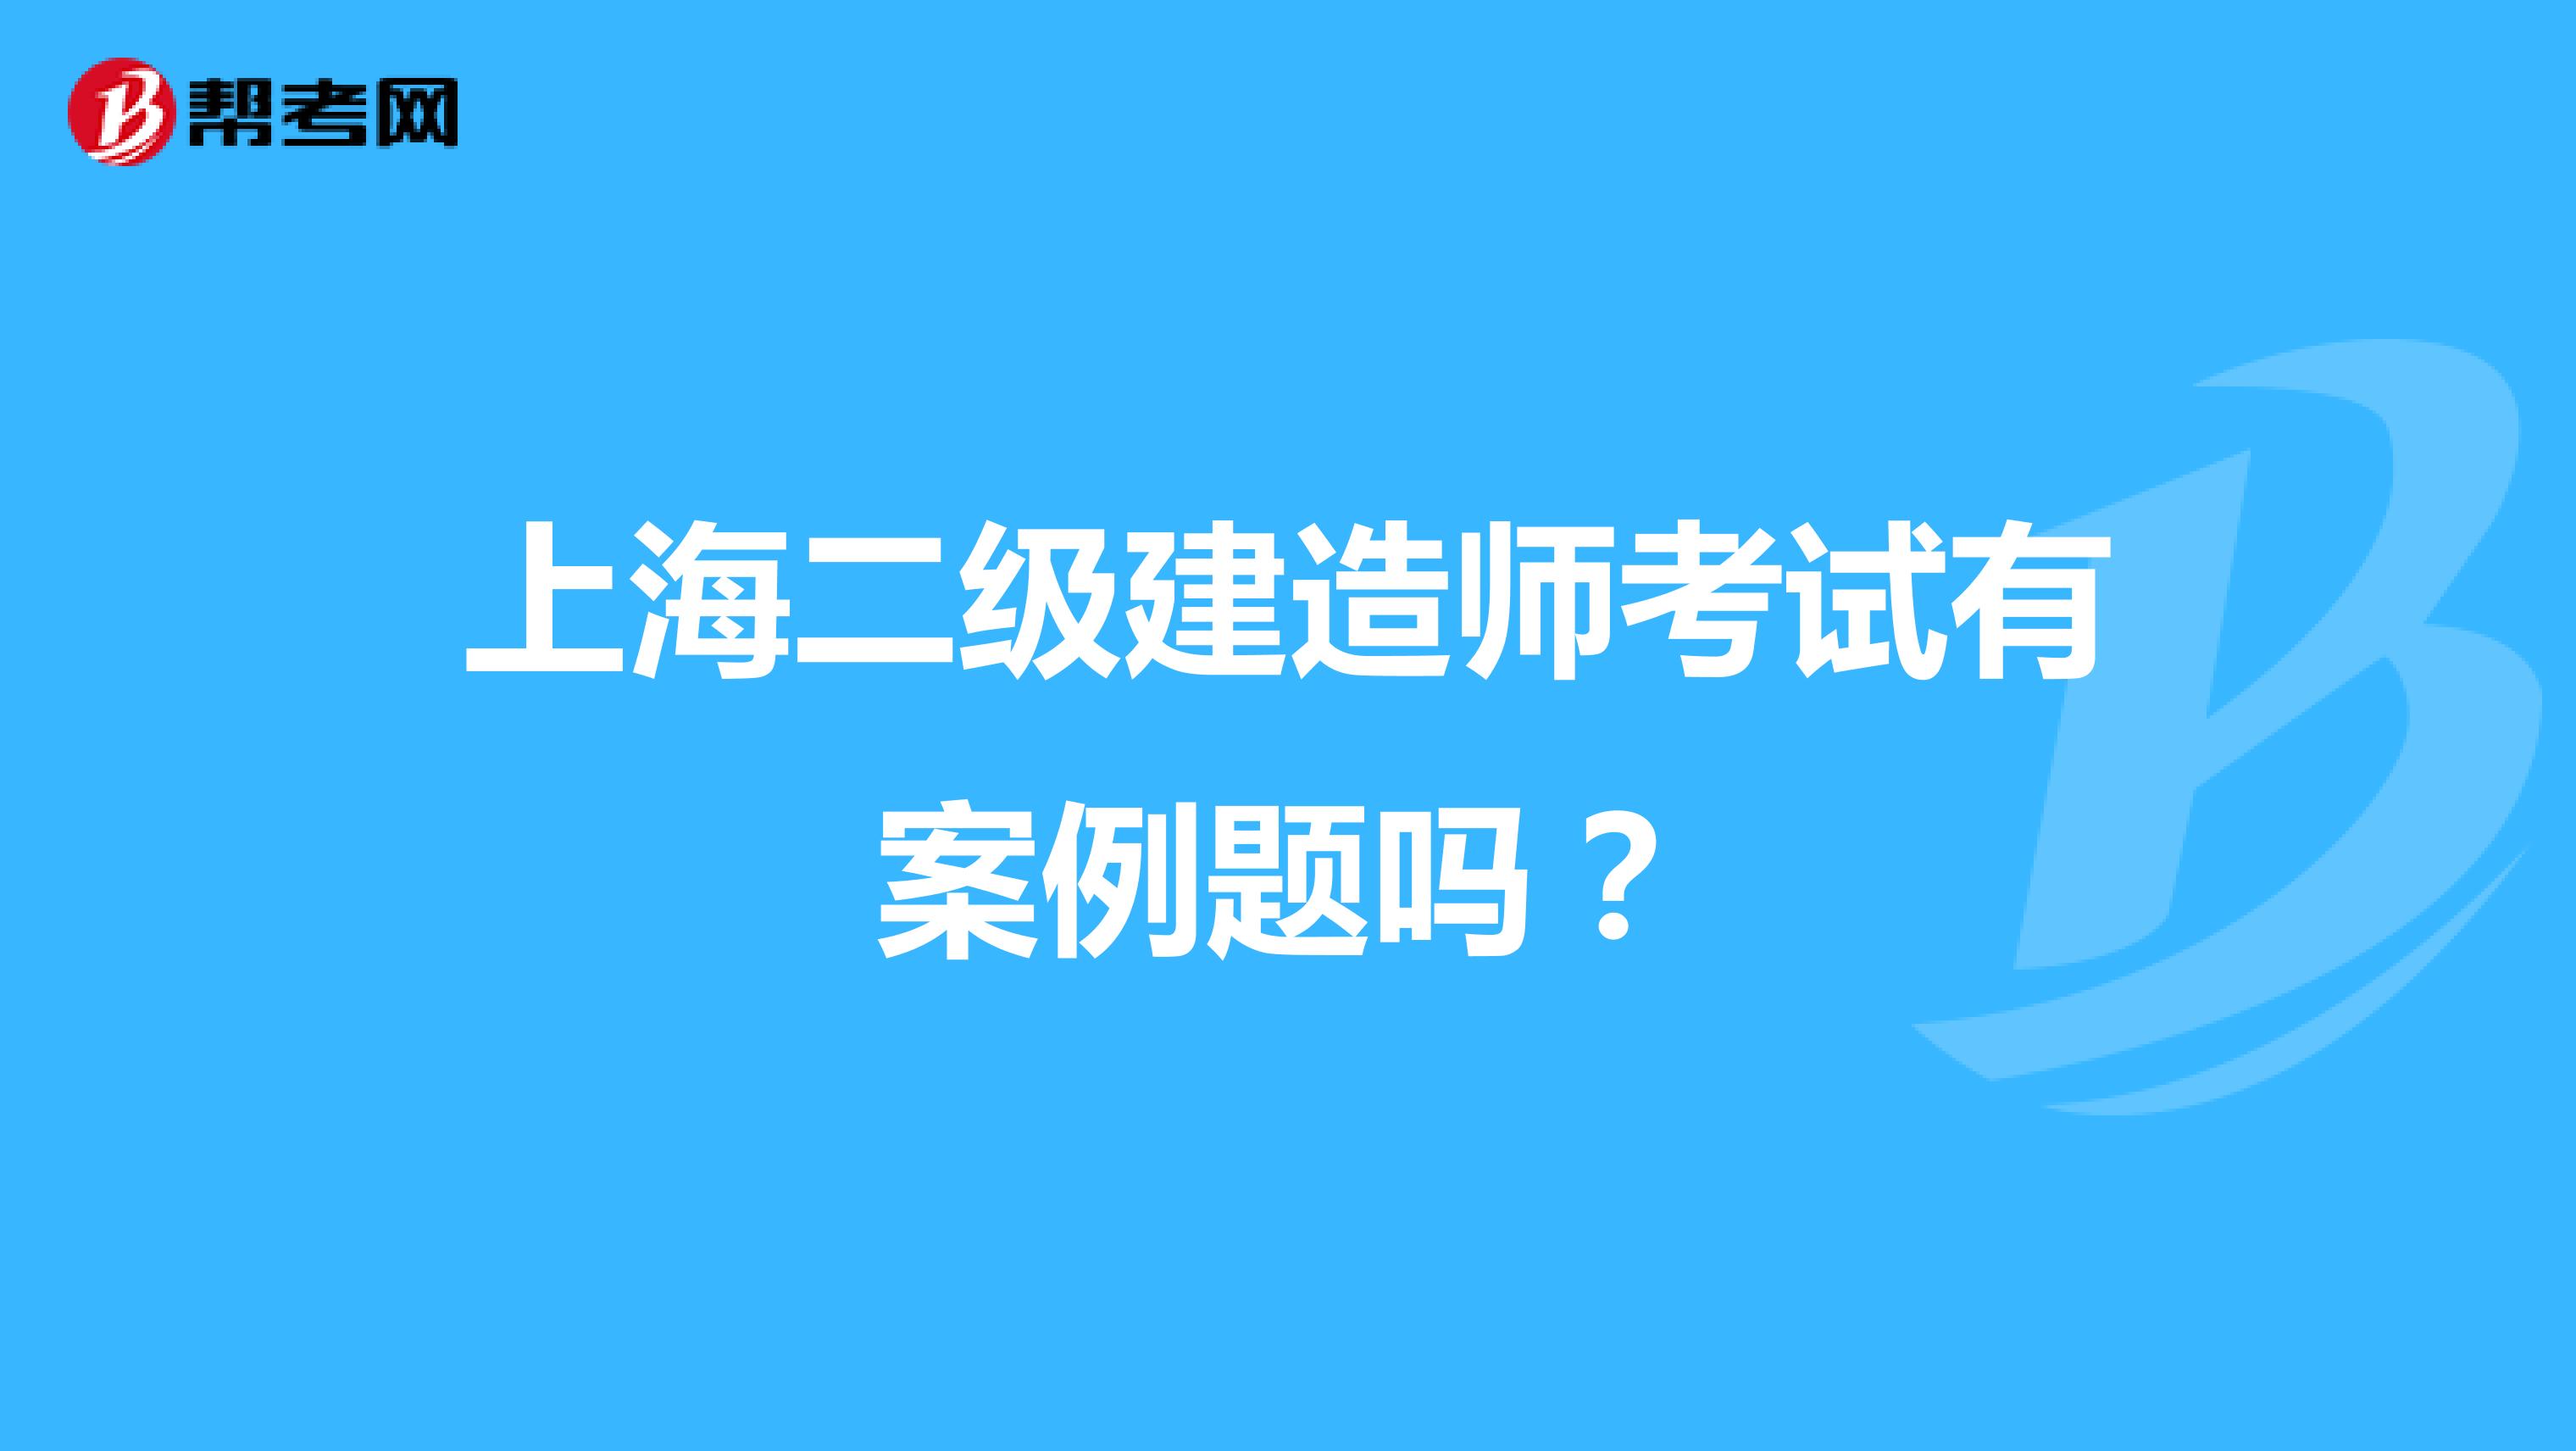 上海二级建造师考试有案例题吗？